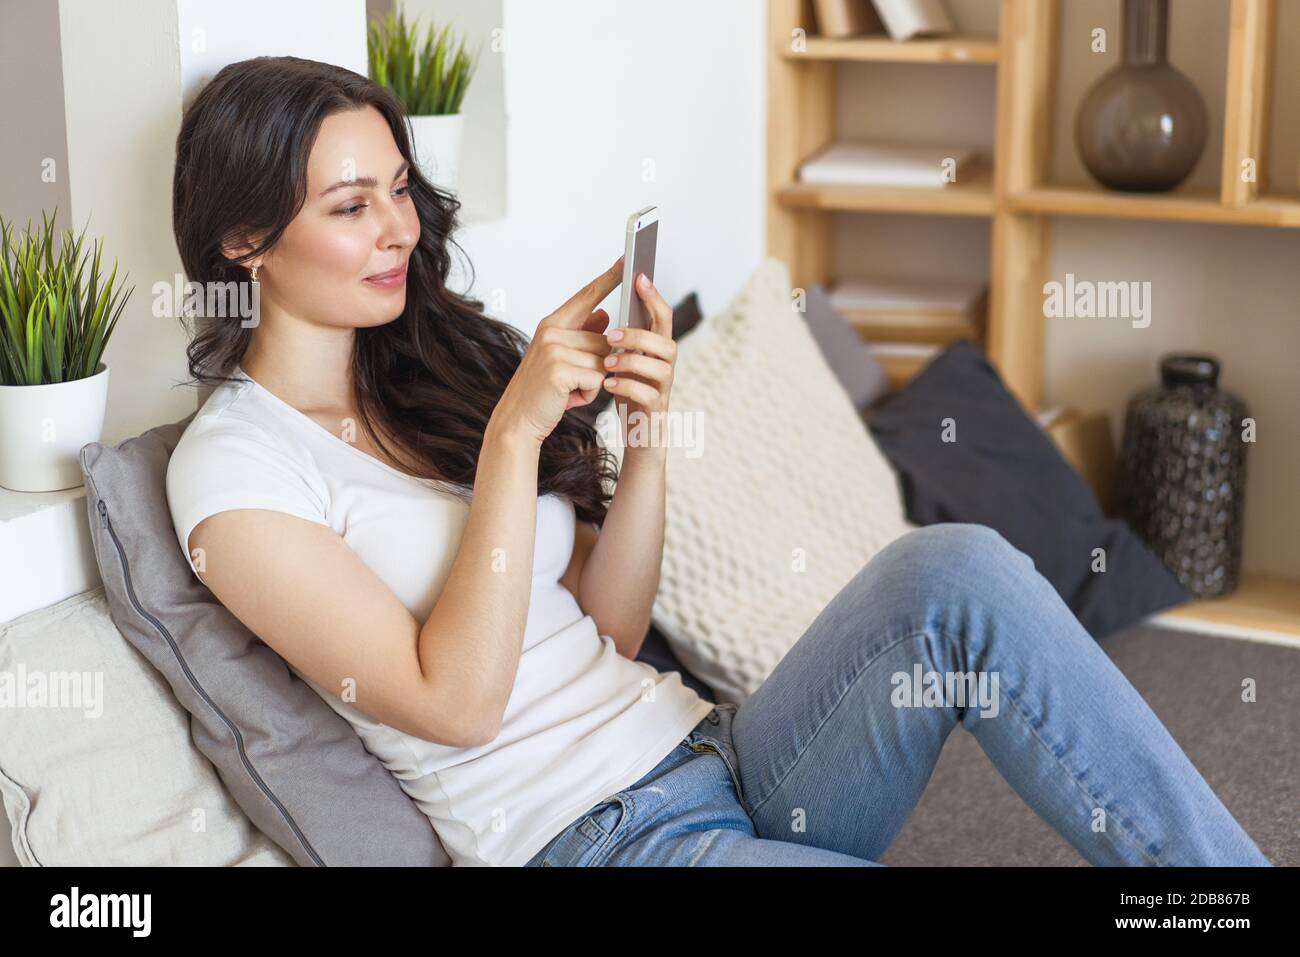 Carino donna felice che tiene il cellulare, utilizzando l'applicazione di incontri mobili per chattare o inviare messaggi. Foto Stock